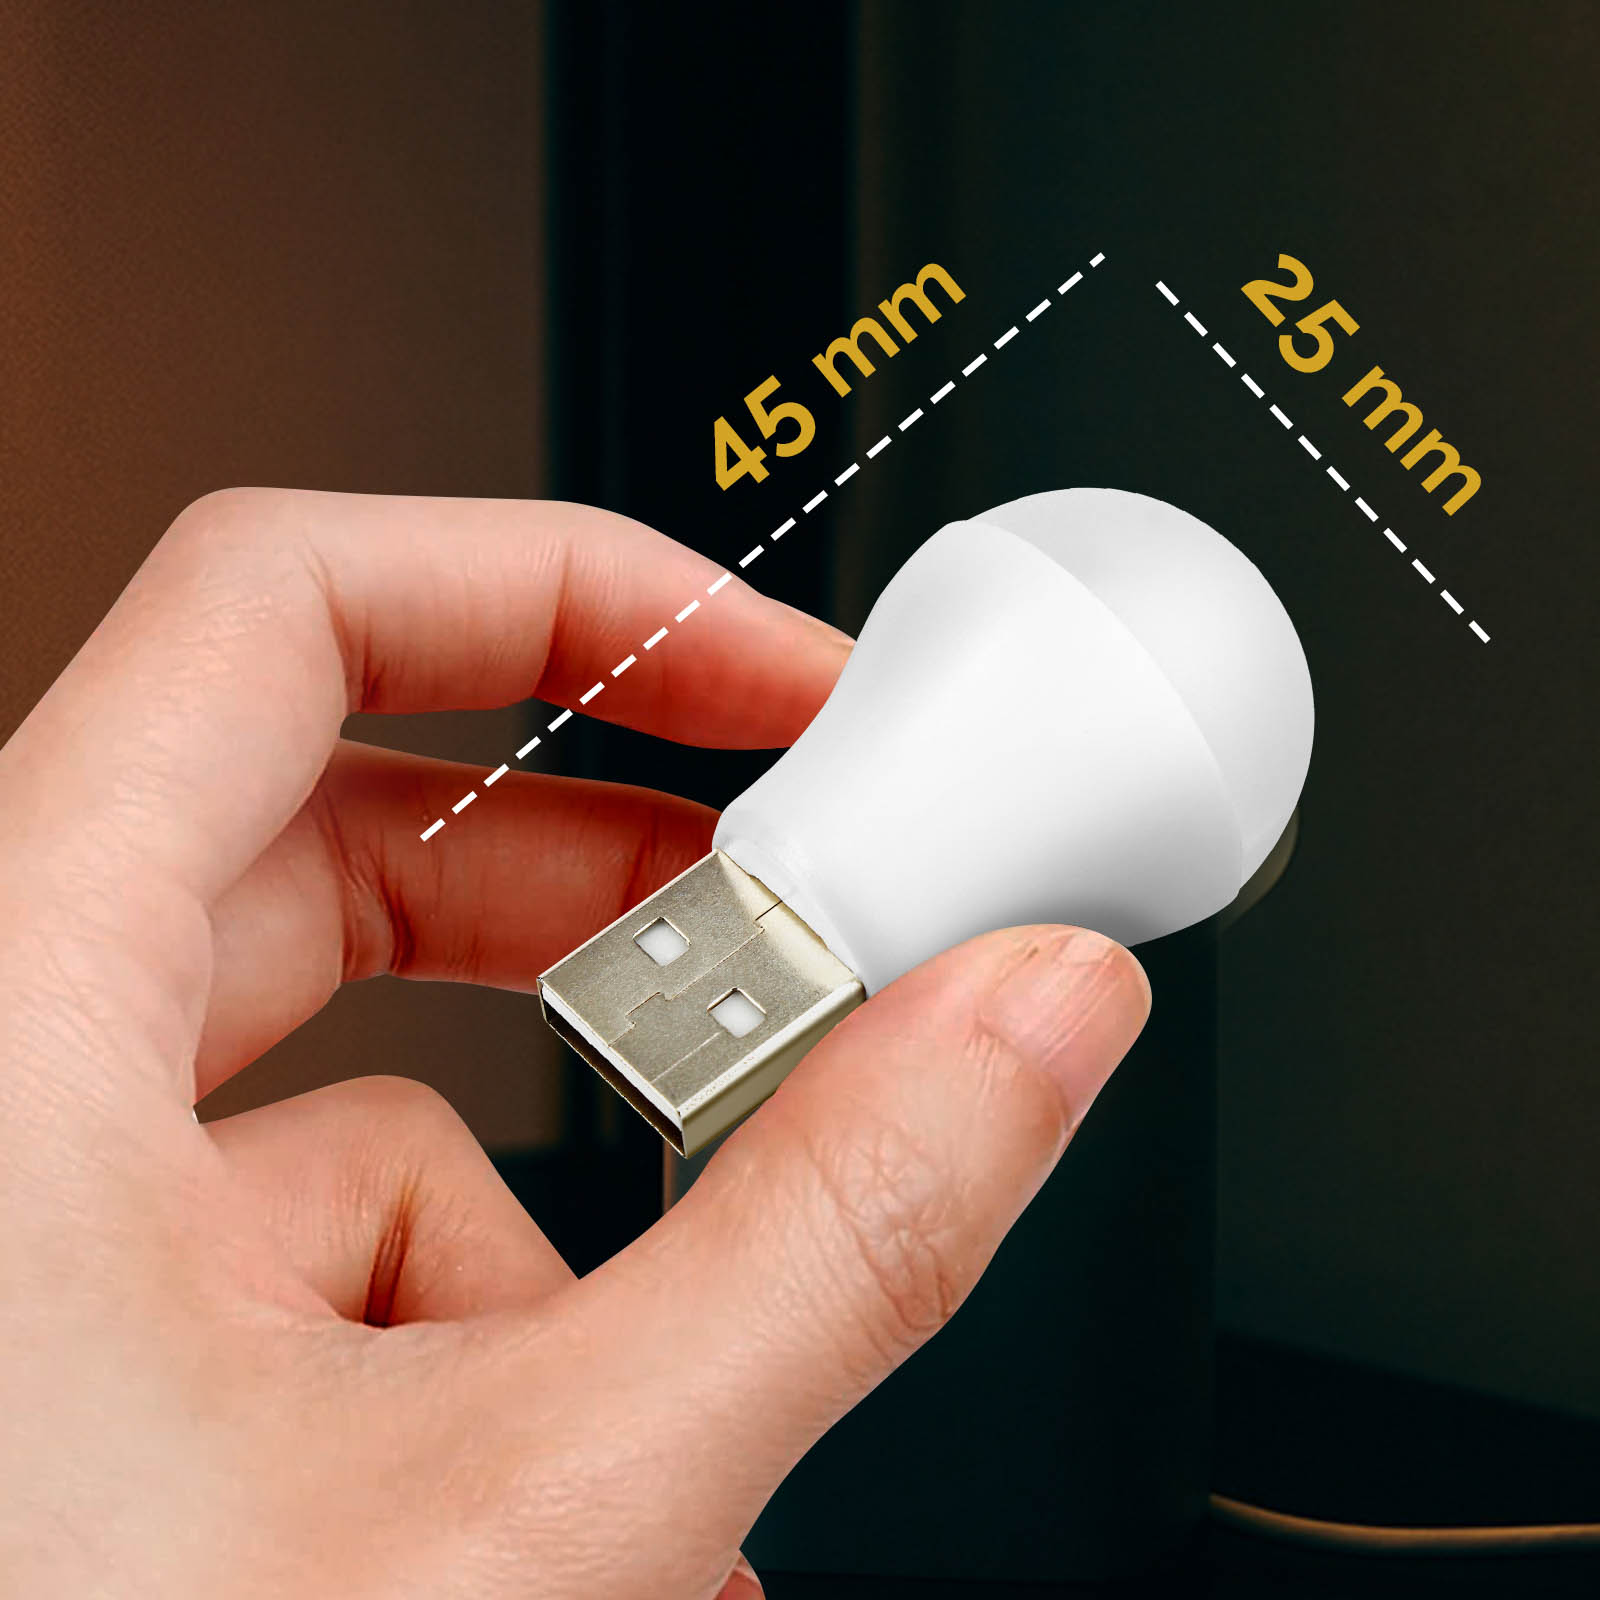 Bombilla LED USB de 1W y 6500K con formato compacto y universal - Spain